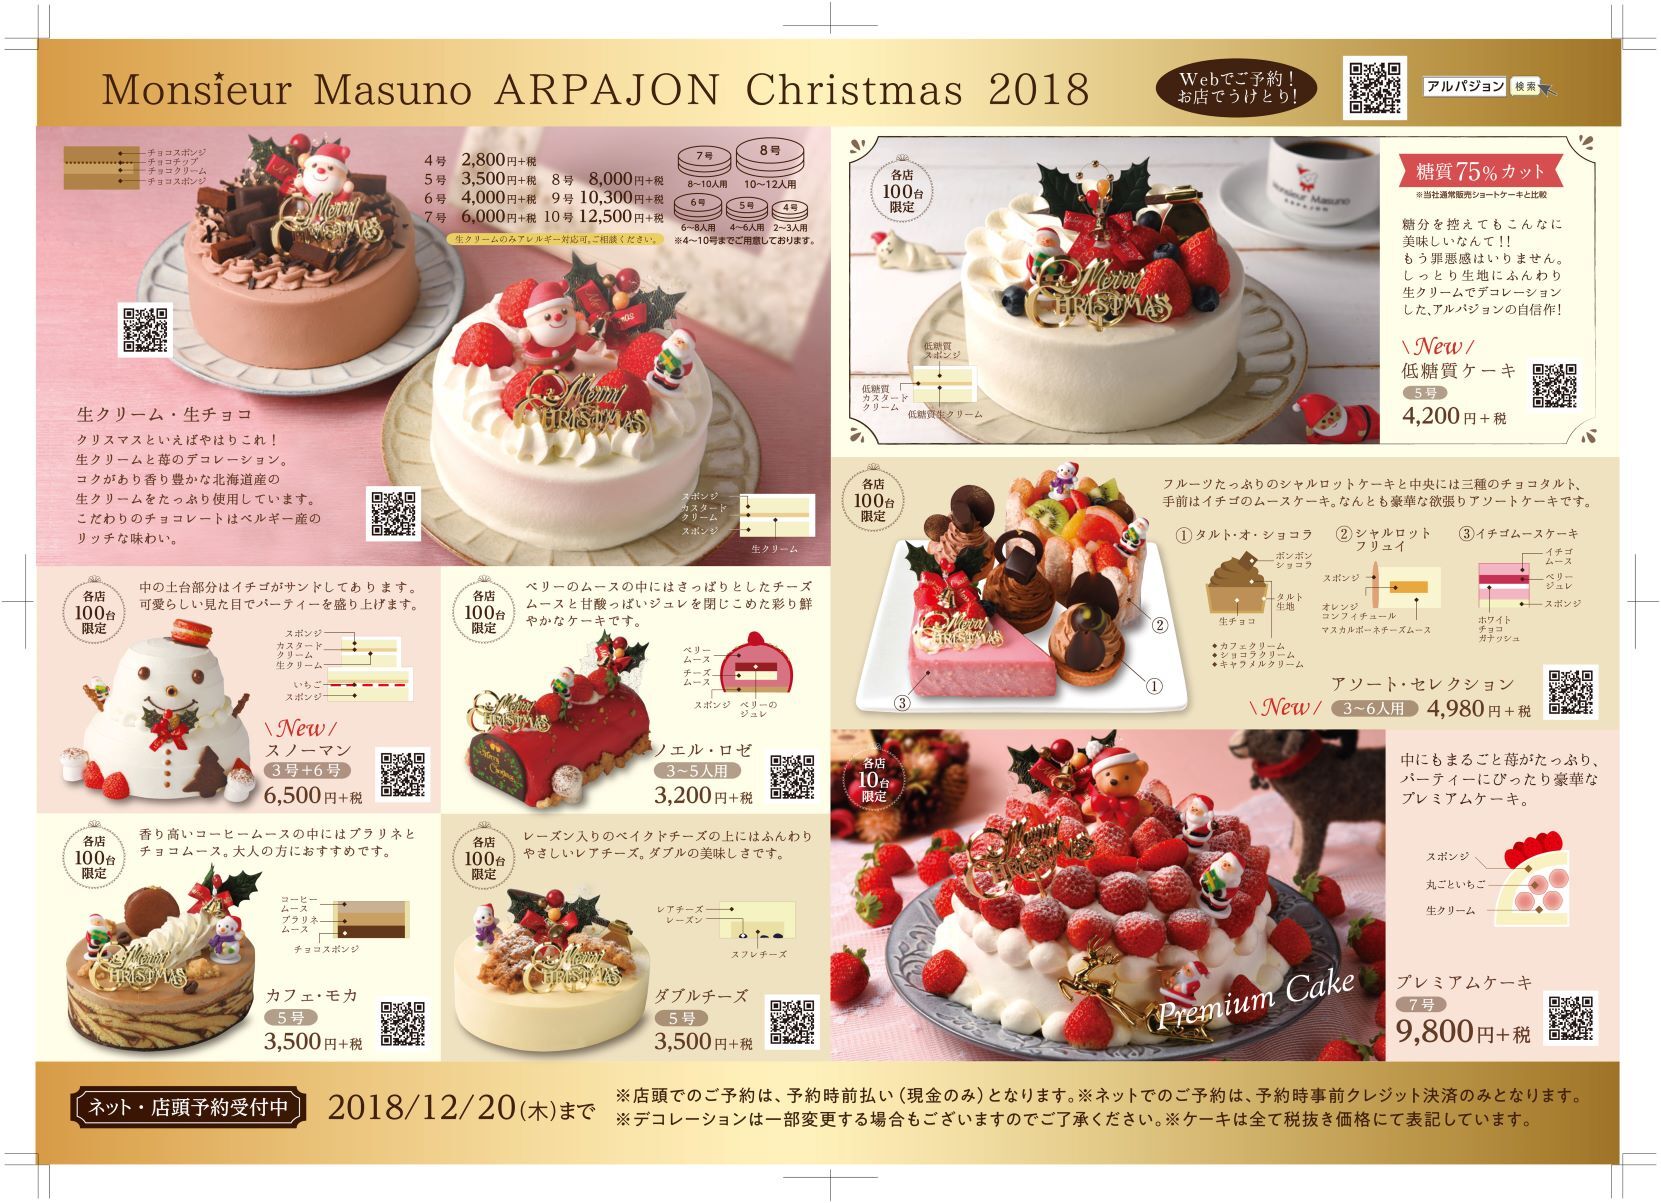 女性が喜ぶ糖質75 オフのクリスマスケーキを宮城県の洋菓子店 ムッシュ マスノ アルパジョン が新発表 予約数が予想以上に順調に推移中 有限会社 益野製菓 ムッシュ マスノ アルパジョン のプレスリリース